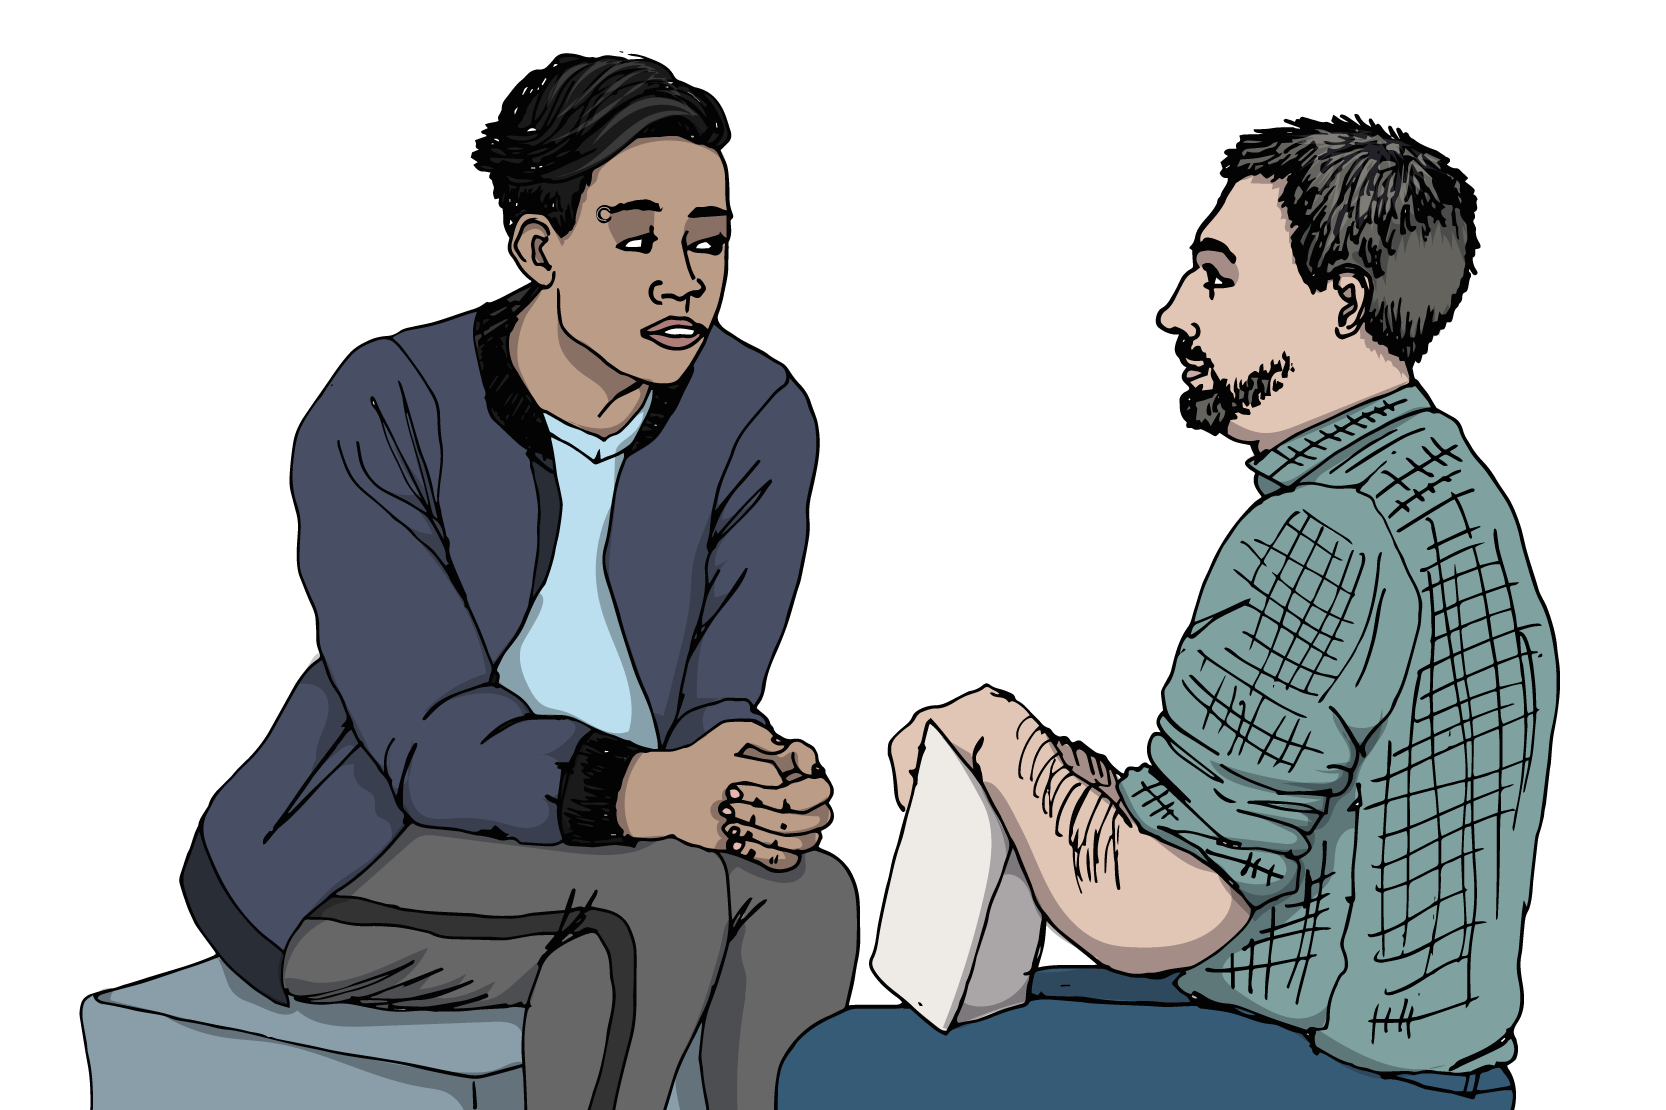 En ung person sitter och pratar med en vuxen person. Illustration.